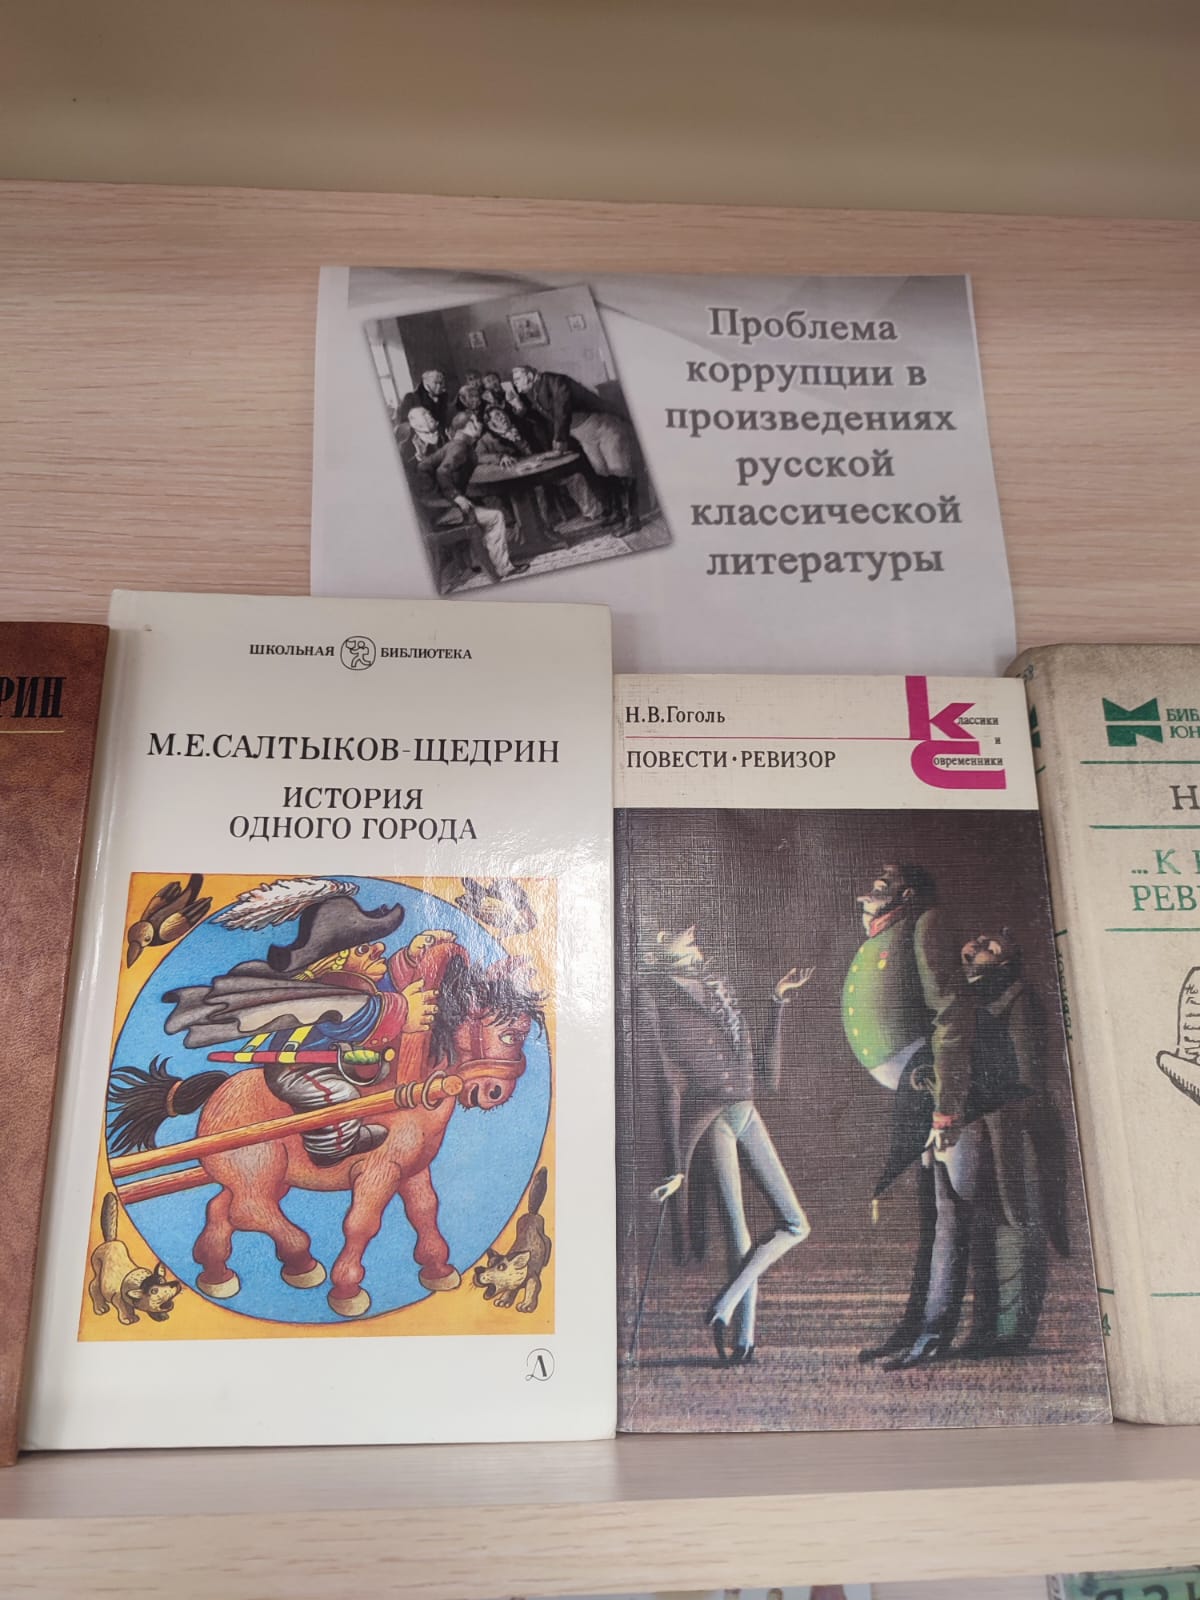 Выставка &amp;quot;Проблемы коррупции в произведениях русской классической литературы&amp;quot;.